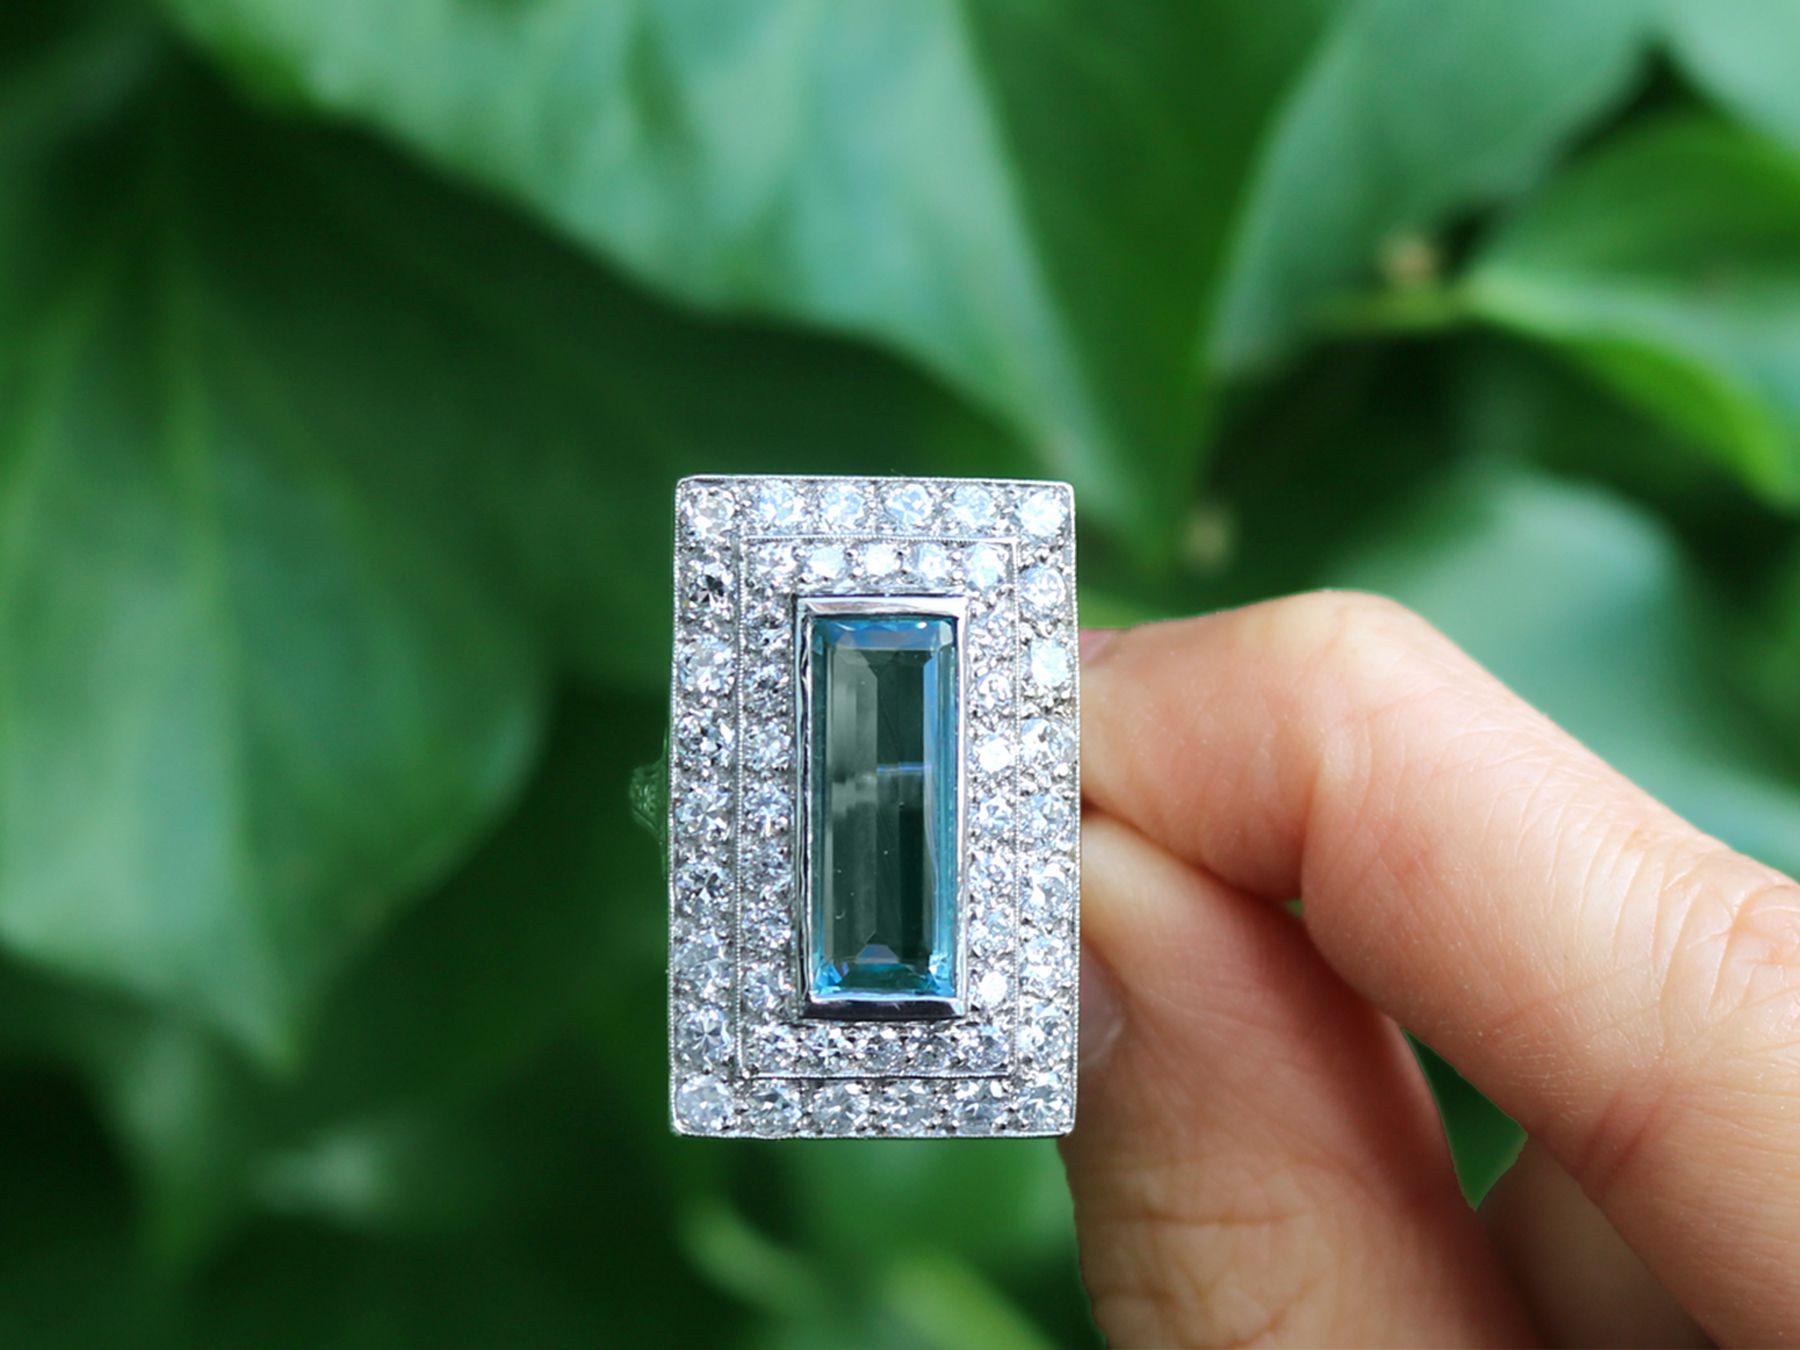 Ein atemberaubender, feiner und beeindruckender Ring mit 3,51 Karat Aquamarin und 3,72 Karat Diamant aus Platin; Teil unserer Schmuckkollektionen.

Dieser atemberaubende, feine und beeindruckende Aquamarin- und Diamantring ist aus Platin